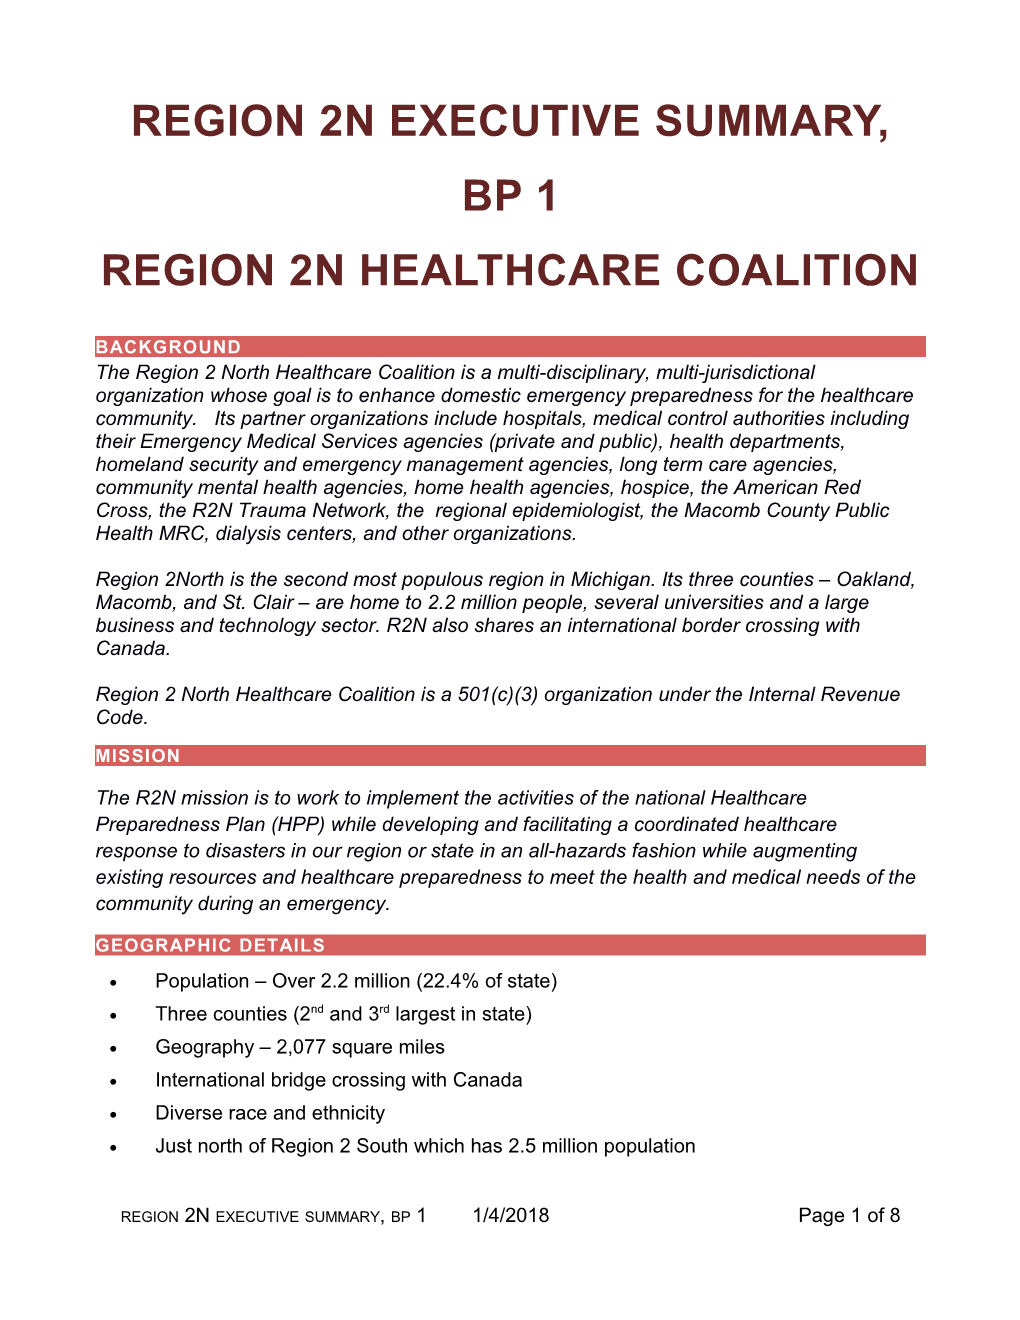 R2N Healthcare Coalition Executive Summary BP1